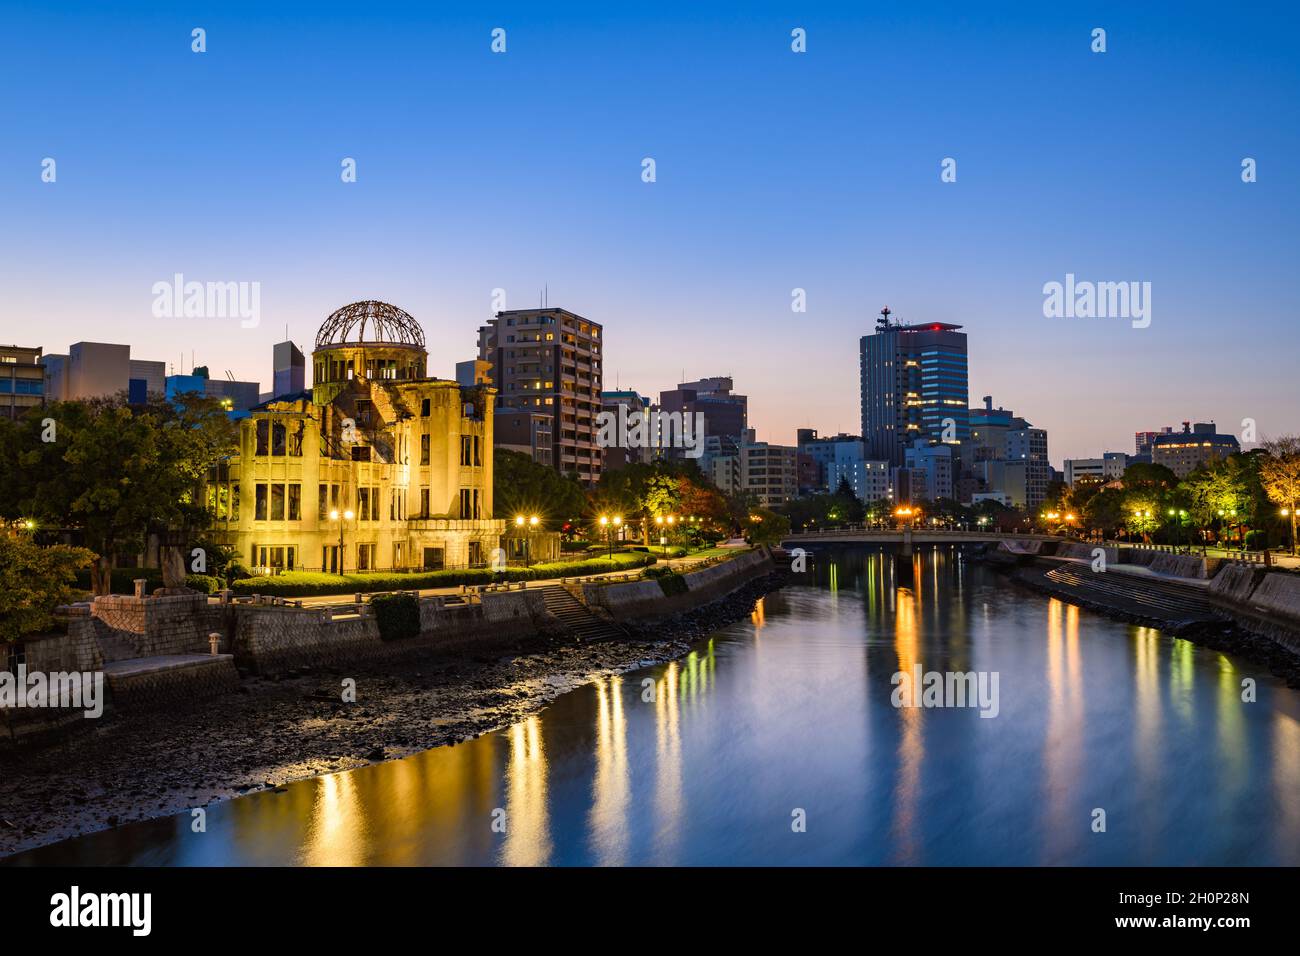 Wunderschöne Beleuchtung von Hiroshima, Blick auf die Skyline Japans mit den Ruinen des Atombombendoms im Morgengrauen. Stockfoto